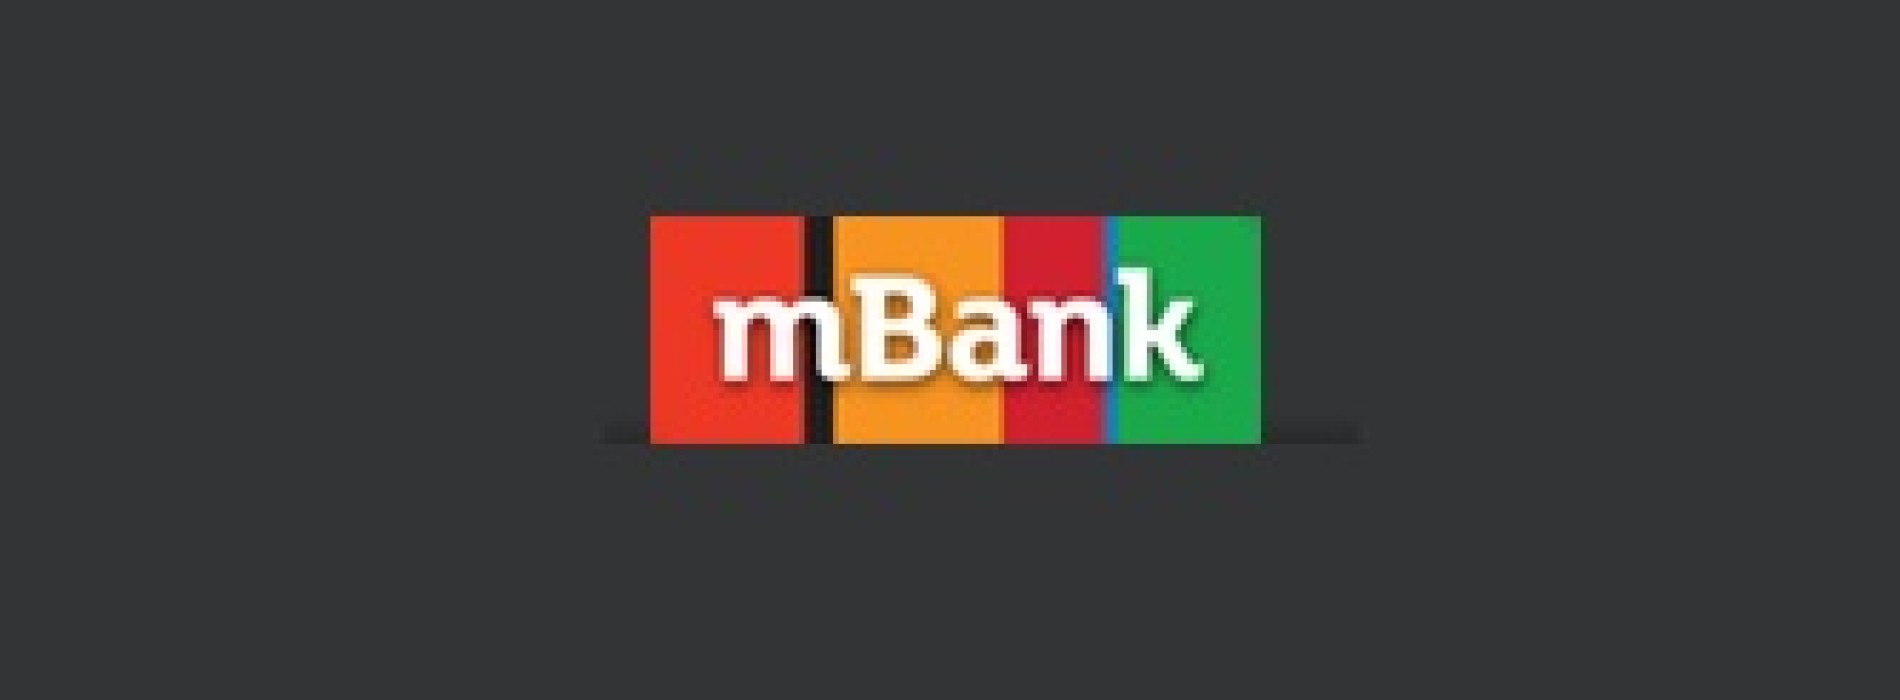 Wyniki stress testów potwierdzają silną pozycję kapitałową i bezpieczny model Grupy mBanku